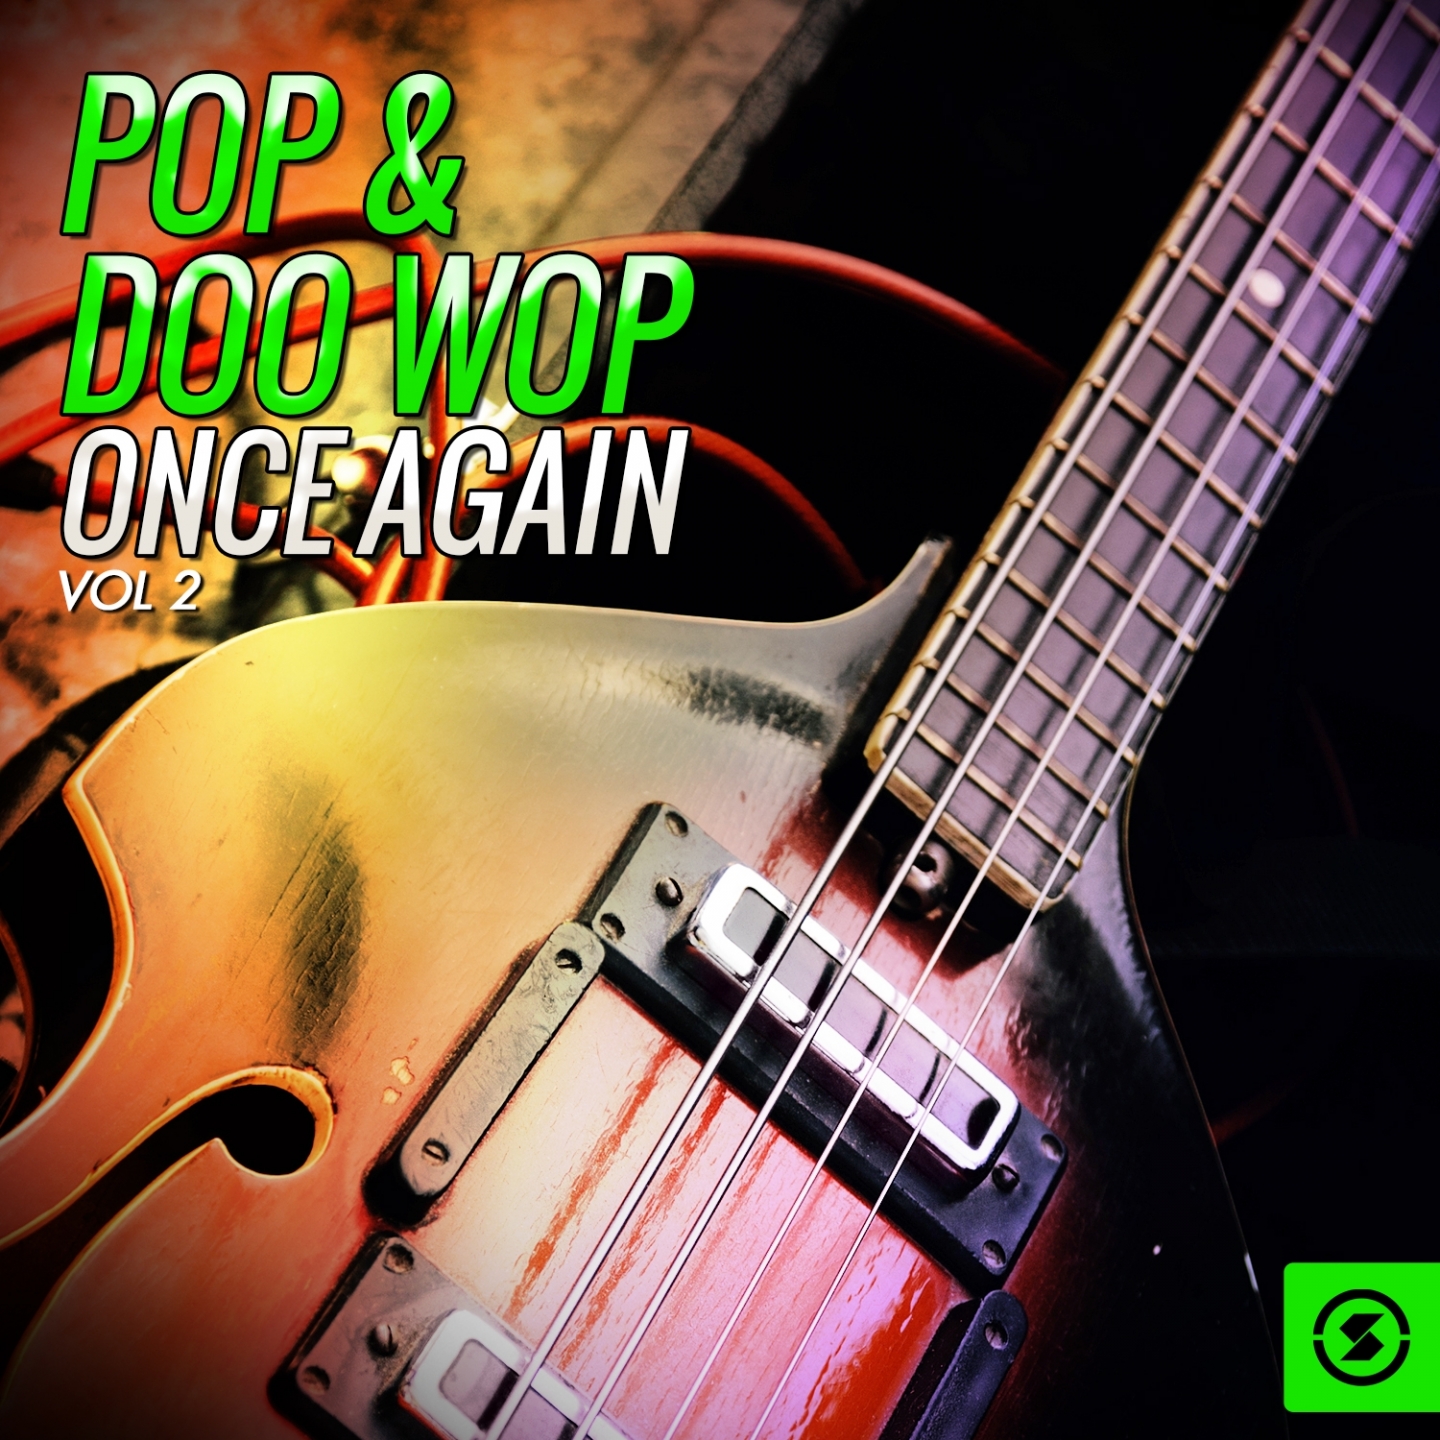 Pop & Doo Wop Once Again, Vol. 2